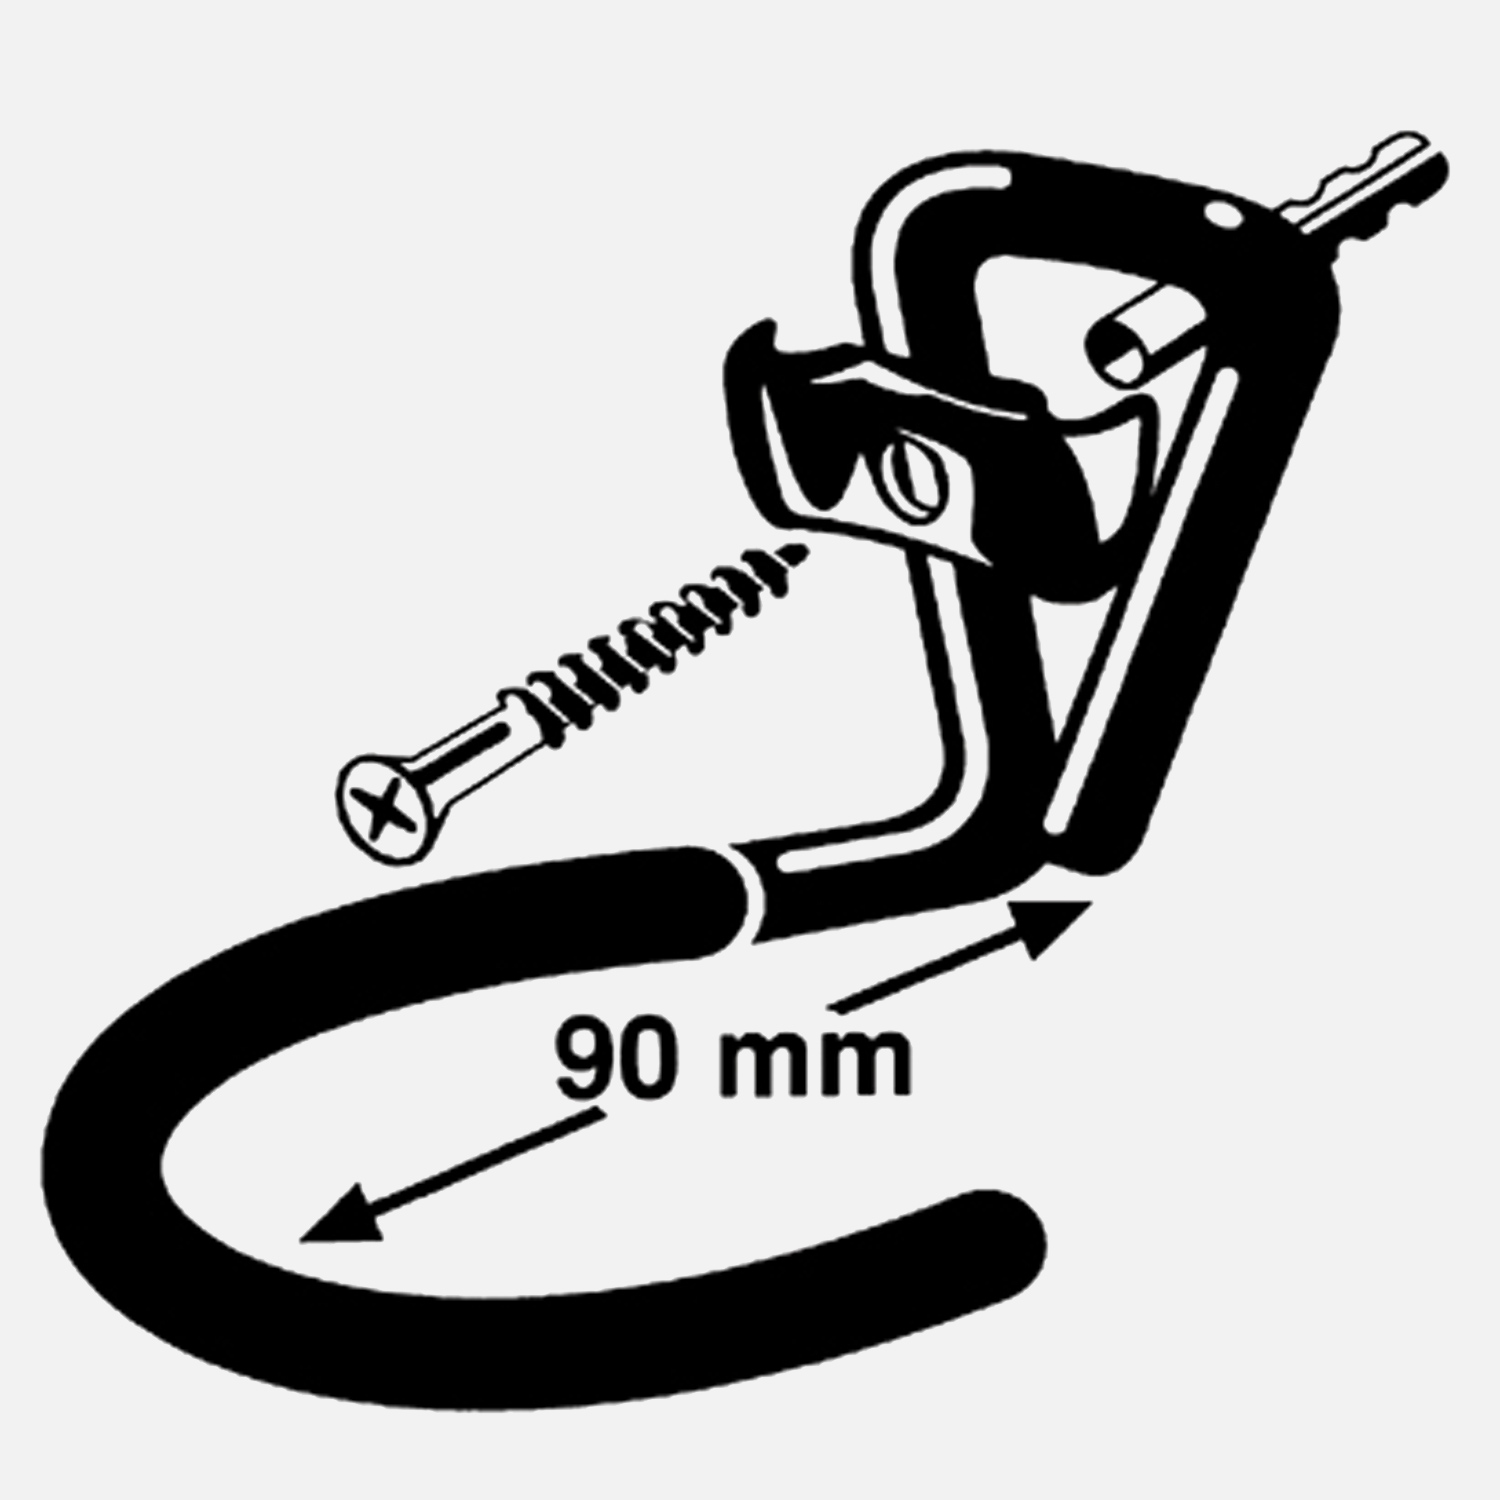 1 FISCHER System-Fahrradhaken-Set 100mm, inkl. Dübel und Schraube